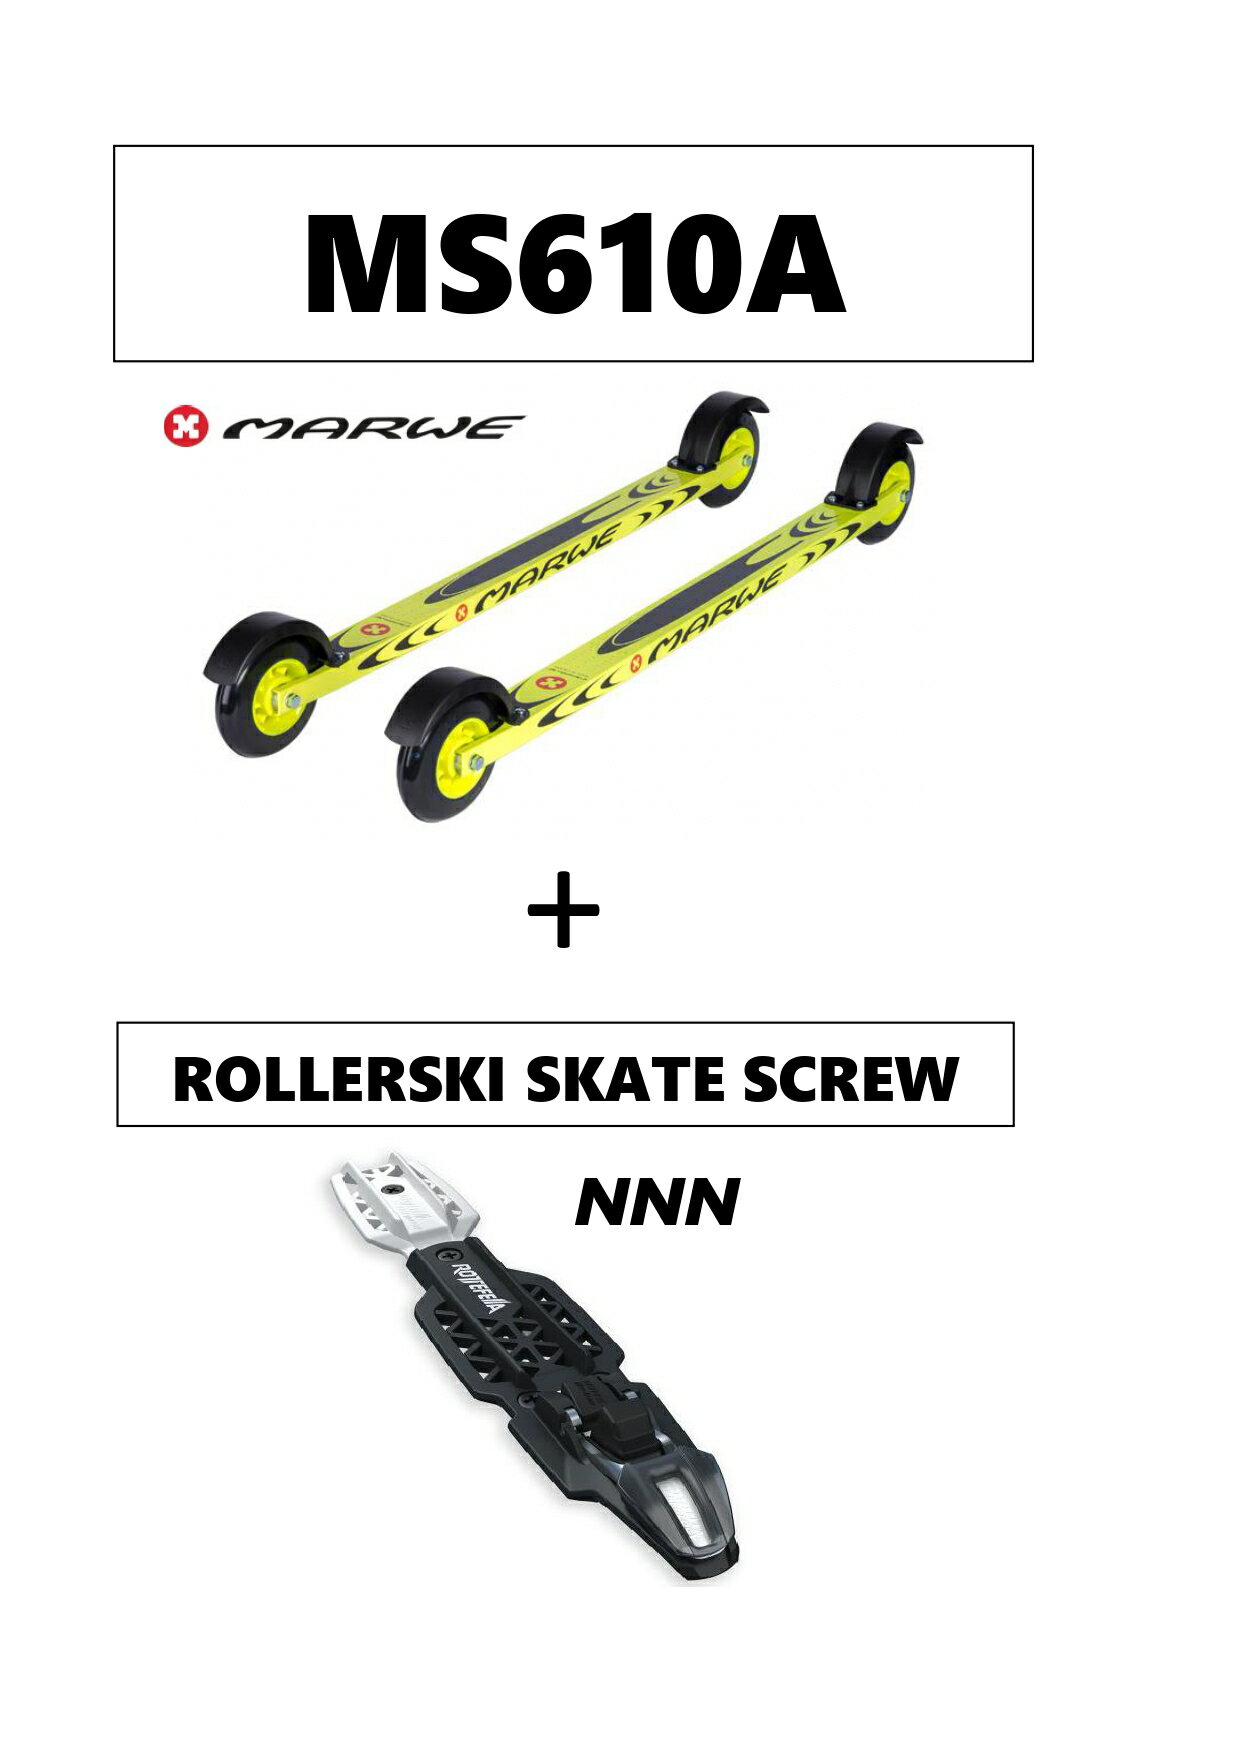 軽量アルミフレームを使用したトレーニング用のモデル。 速さだけではなく激しい動作にも耐えられるように耐久性も重視しているレース入門として フレームサイズ：610mm ホイール：前後輪 USO100/USO100C（コンプリート） 重量：1600g（ペア） 車輪：直径100mm 幅25mm ラバー 構造：アルミ ビンディング：ROTTEFELLA rollerski skate screw (10200309)